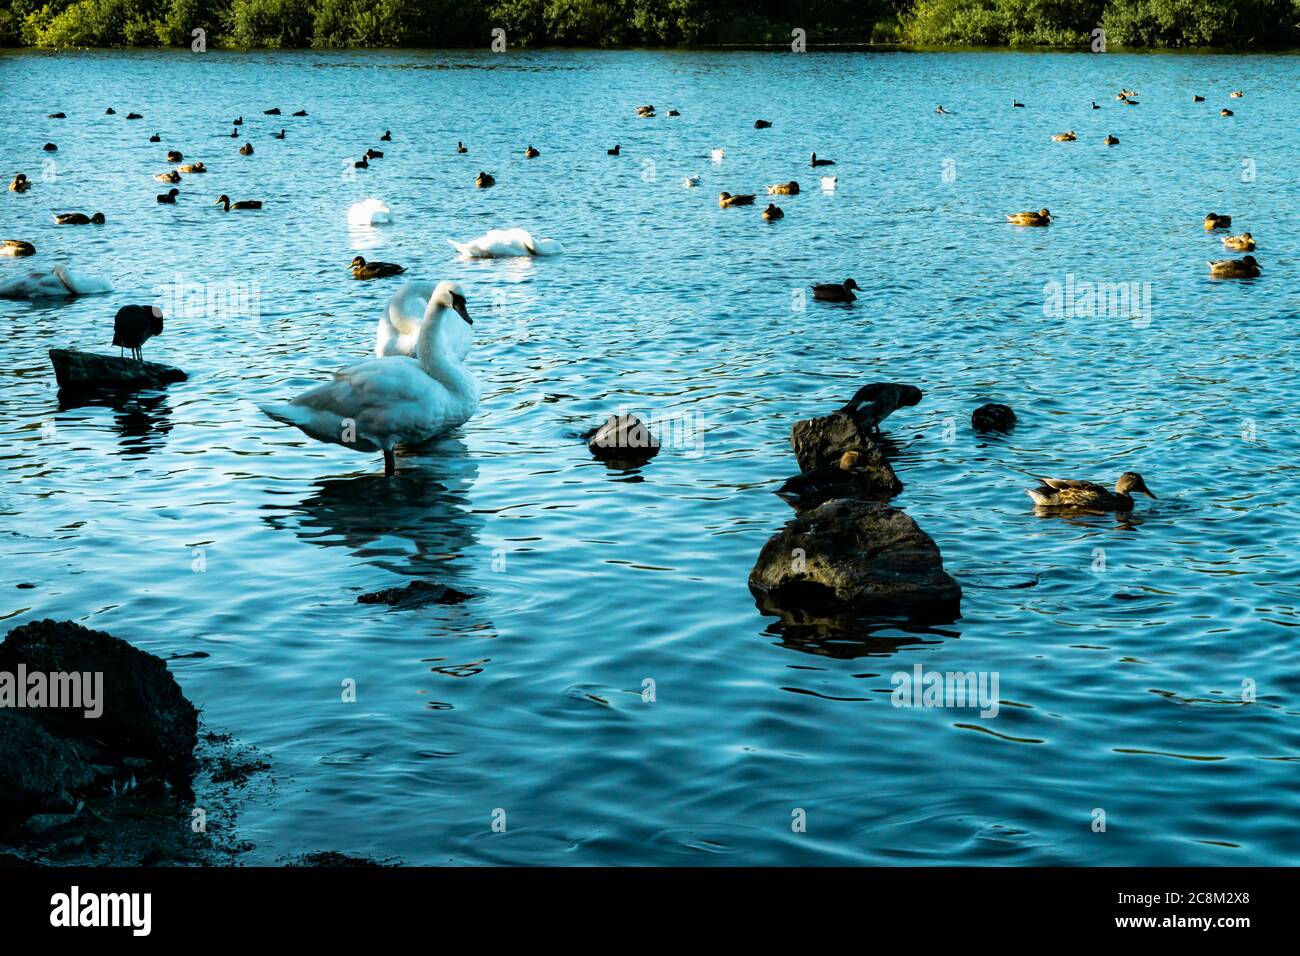 Fauna selvatica godendo della natura sul lago. Un riflesso stupefacente di due cigni mentre sono nel lago. Le increspature dell'acqua distorcono il riflesso di Foto Stock